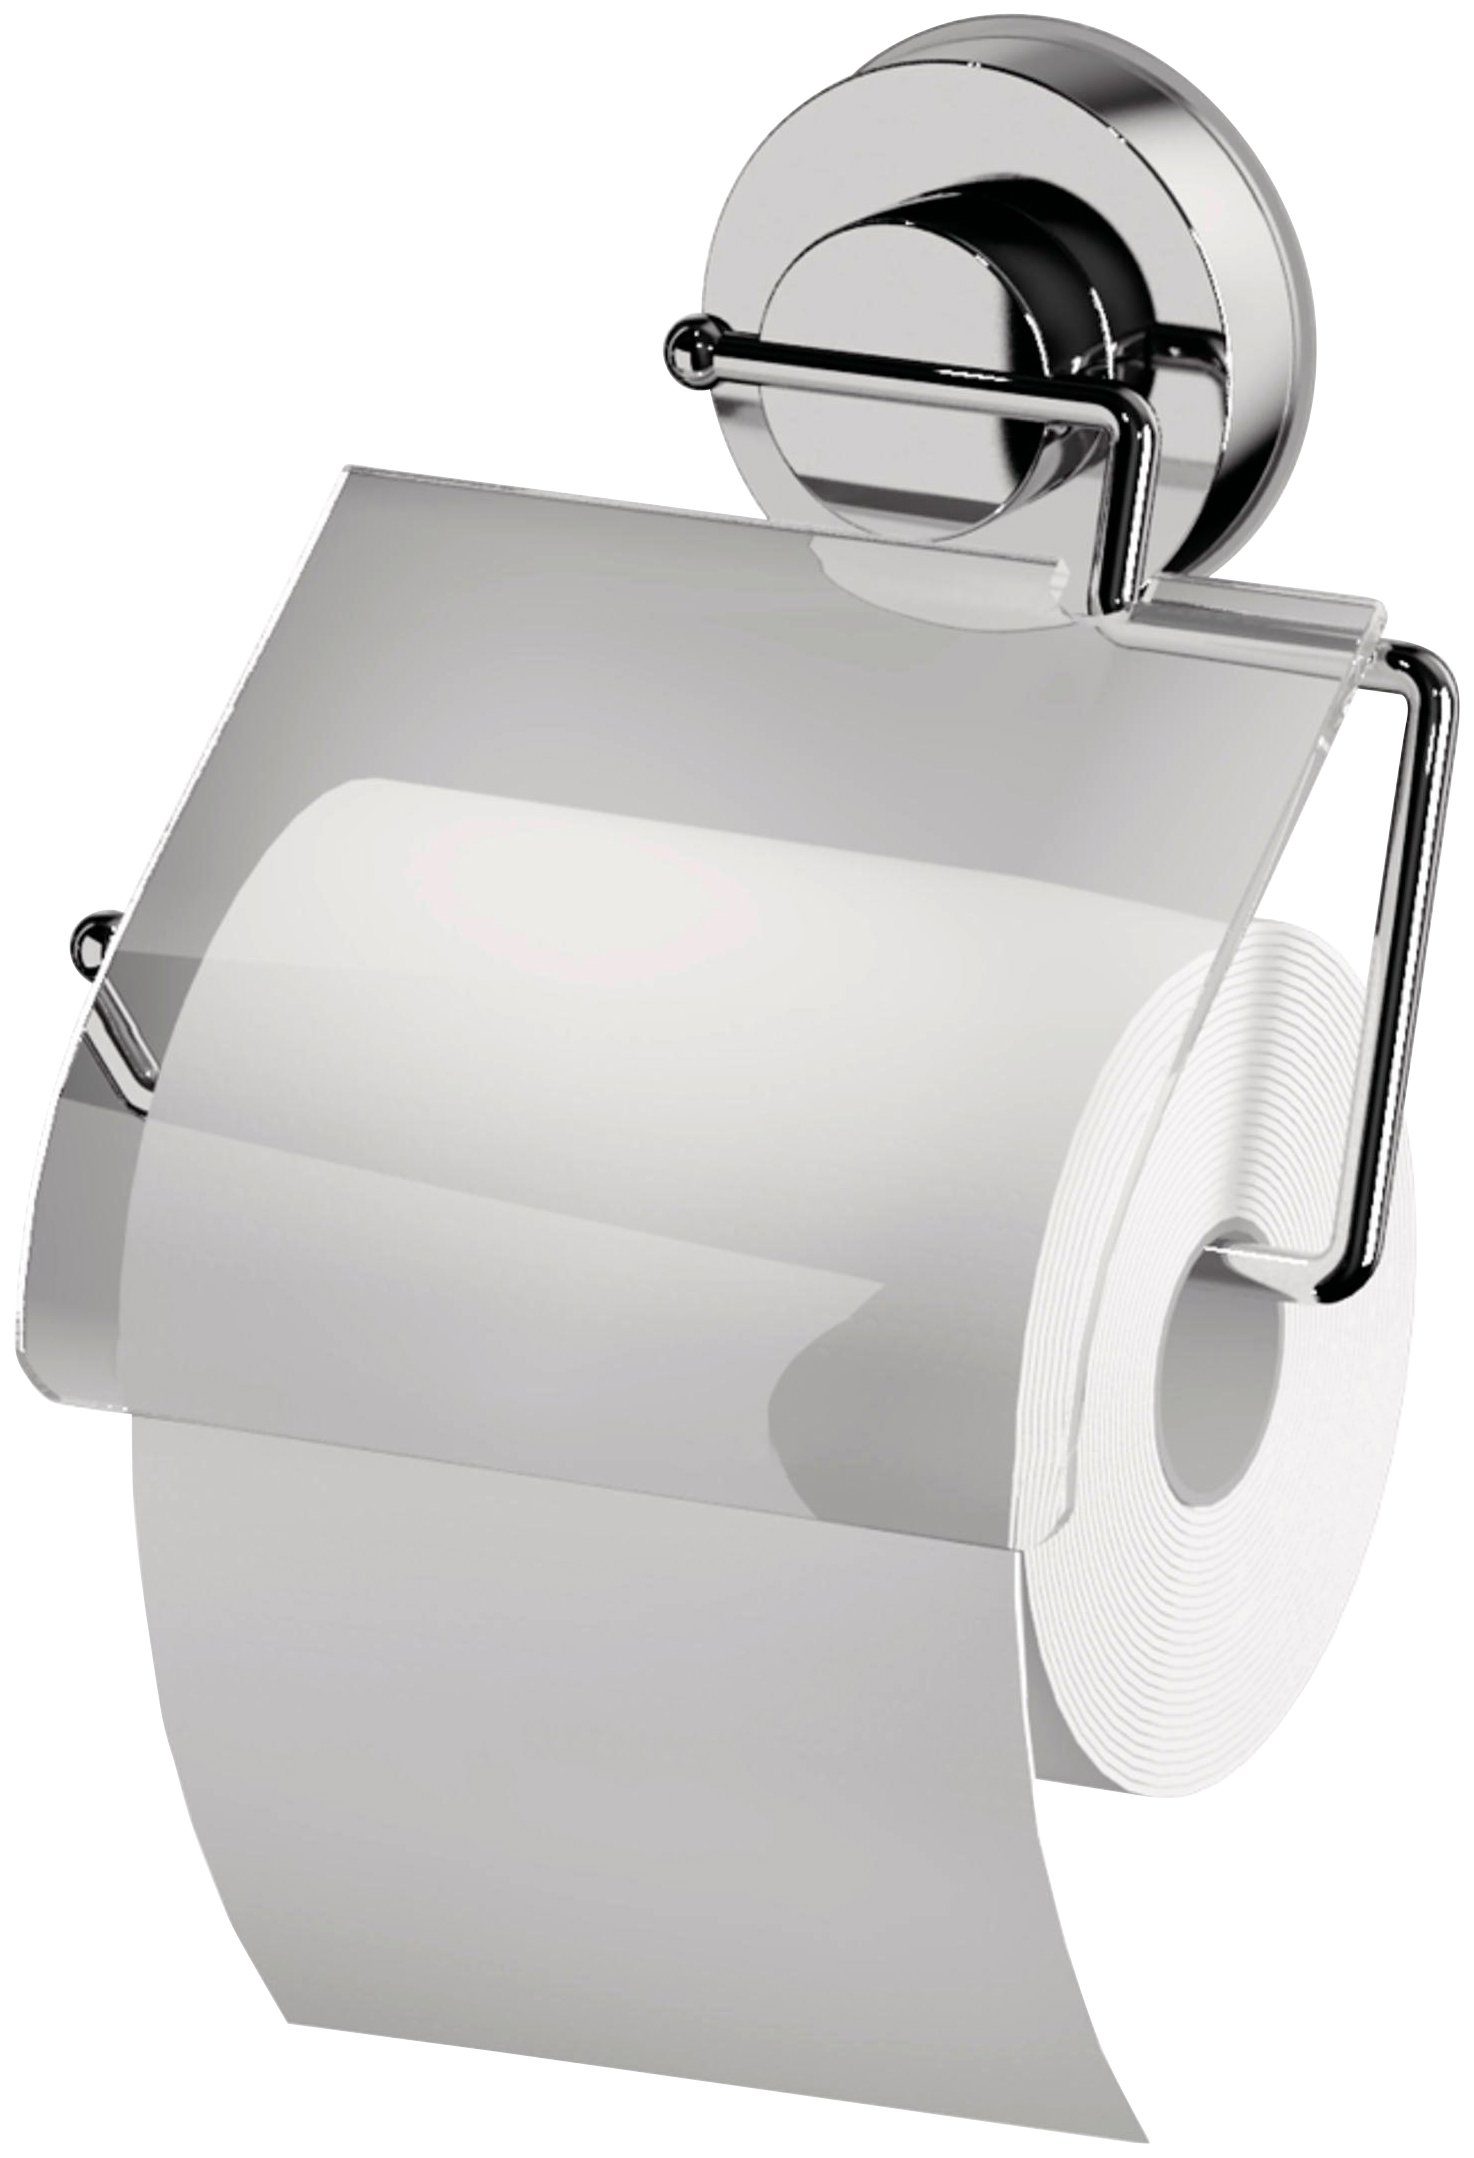 mit Bei auf Toilettenpapierhalter, nicht Verwendung Tapete rückstandslos Ridder Saugvorrichtung, entfernbar